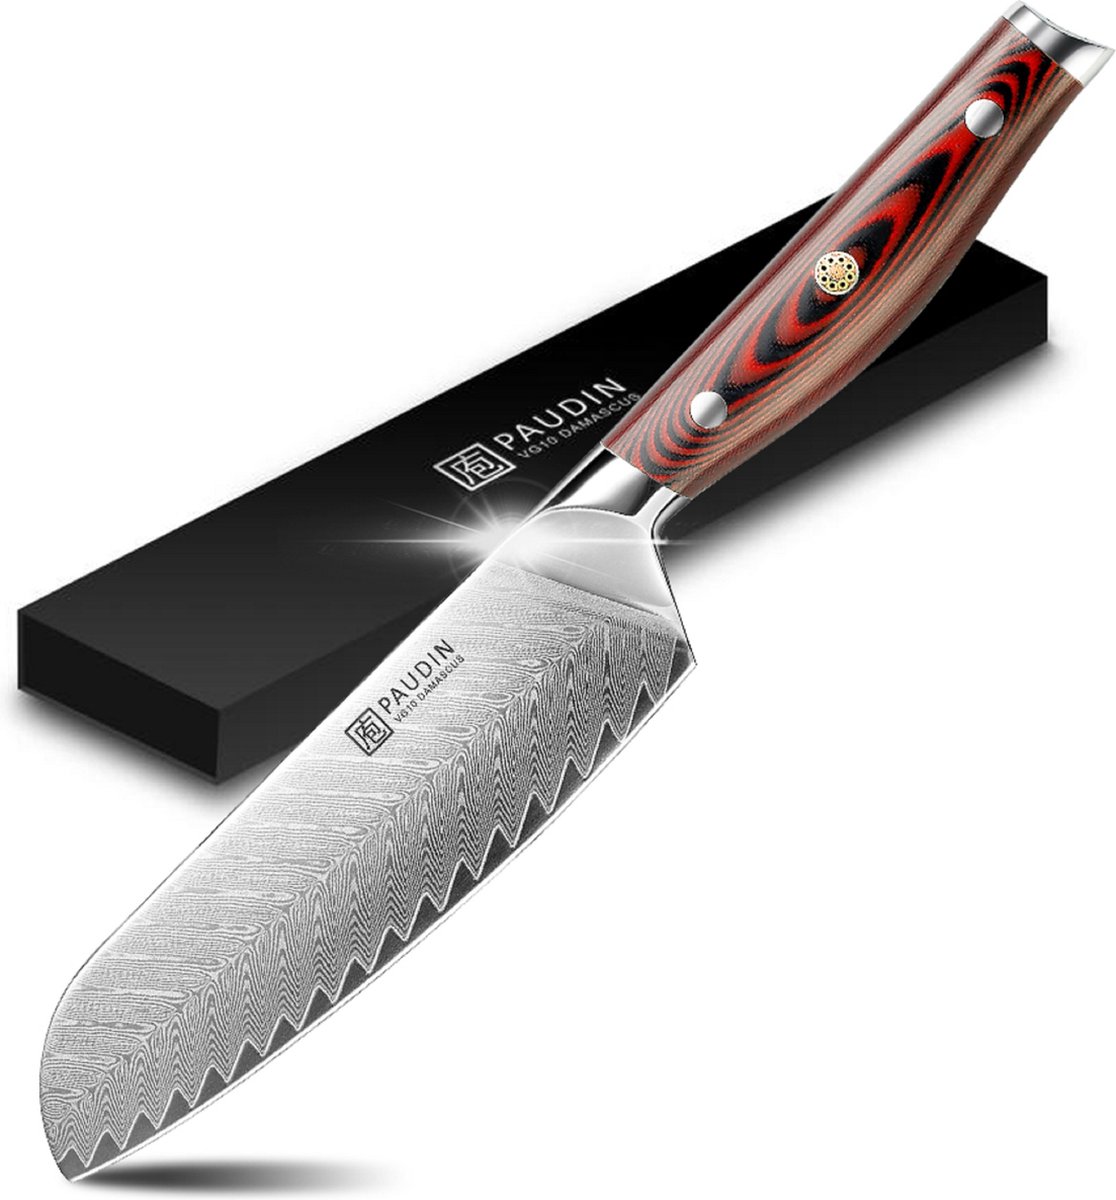 Les meilleures façons d'utiliser le couteau santoku en cuisine